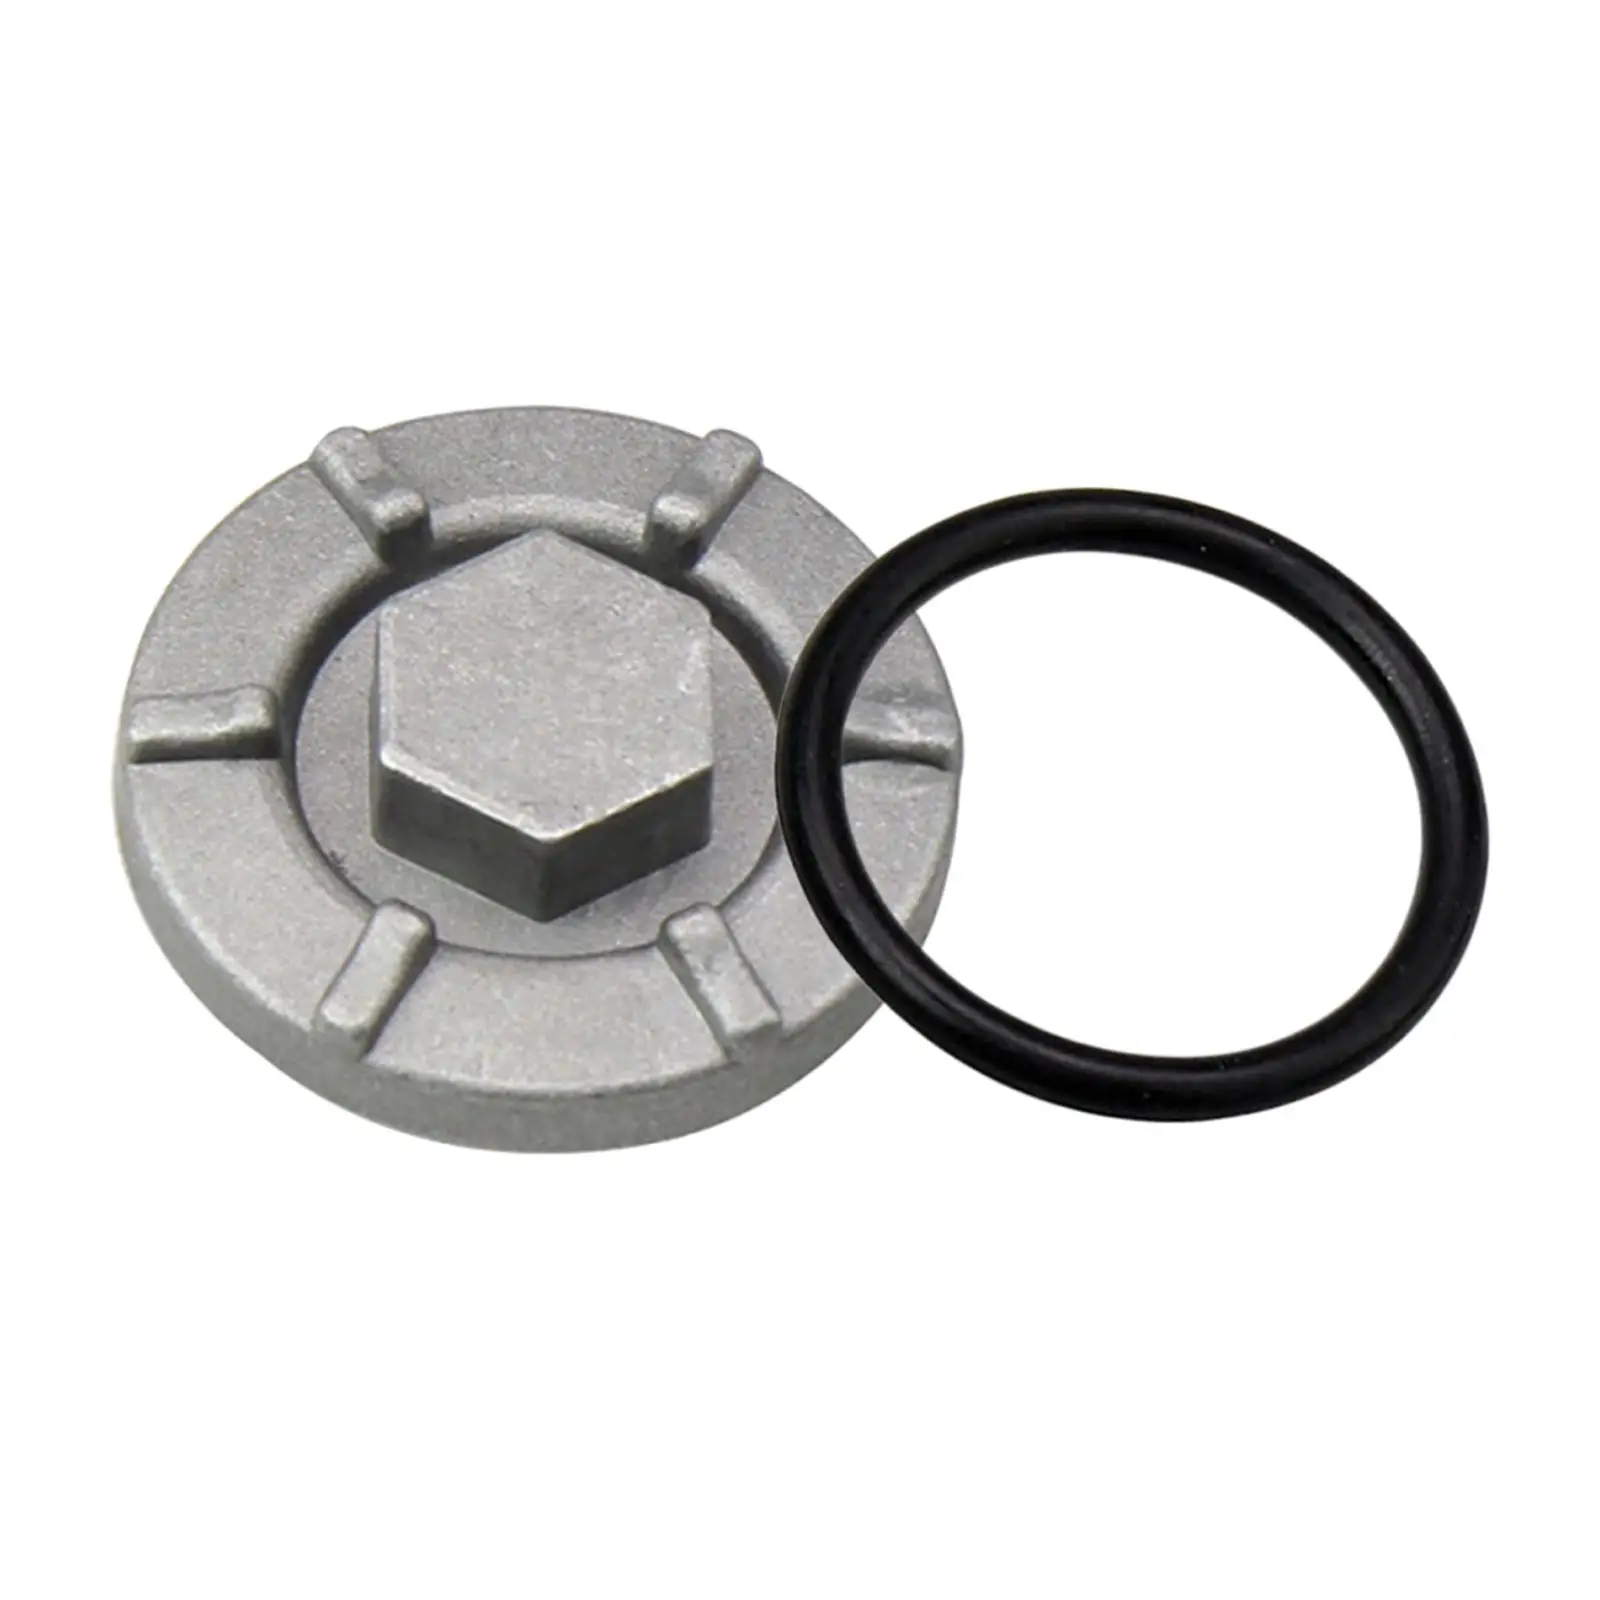 4HC-15351-00-00 Oil Drain Plug for Spare Parts Durable Cast Aluminum